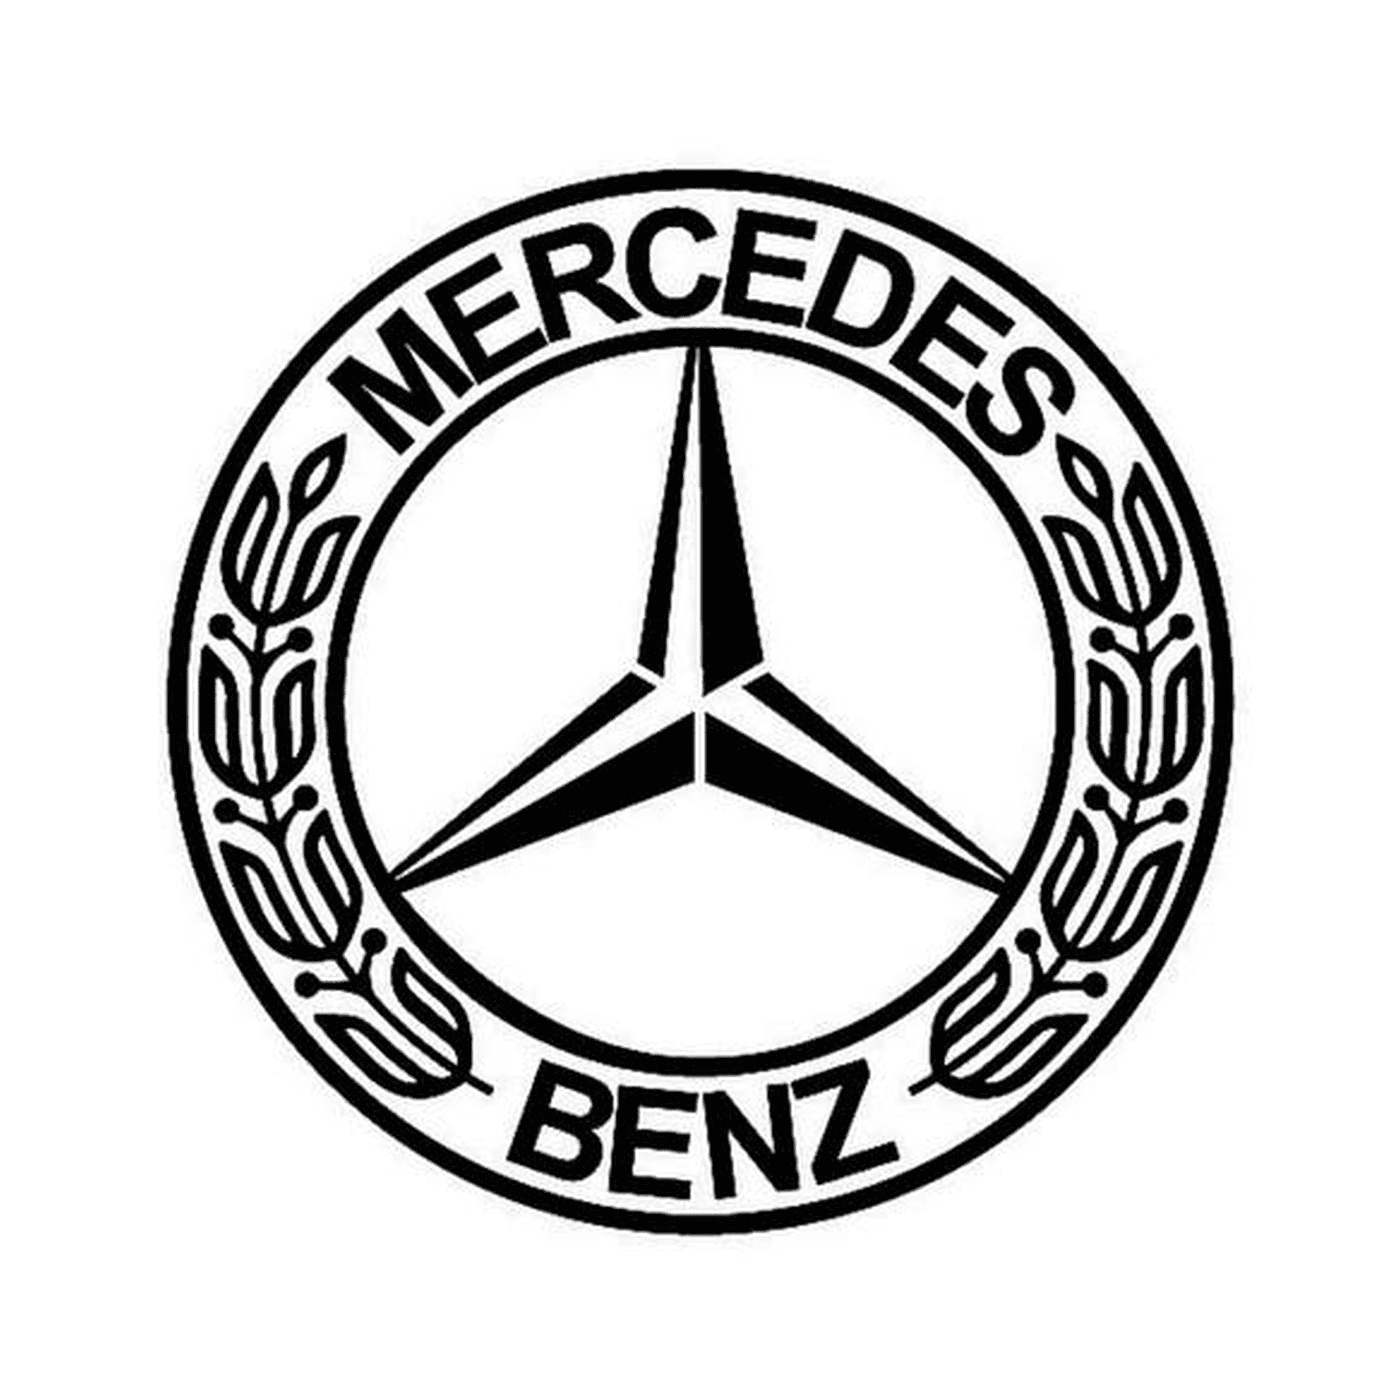  Отличительный логотип Mercedes 